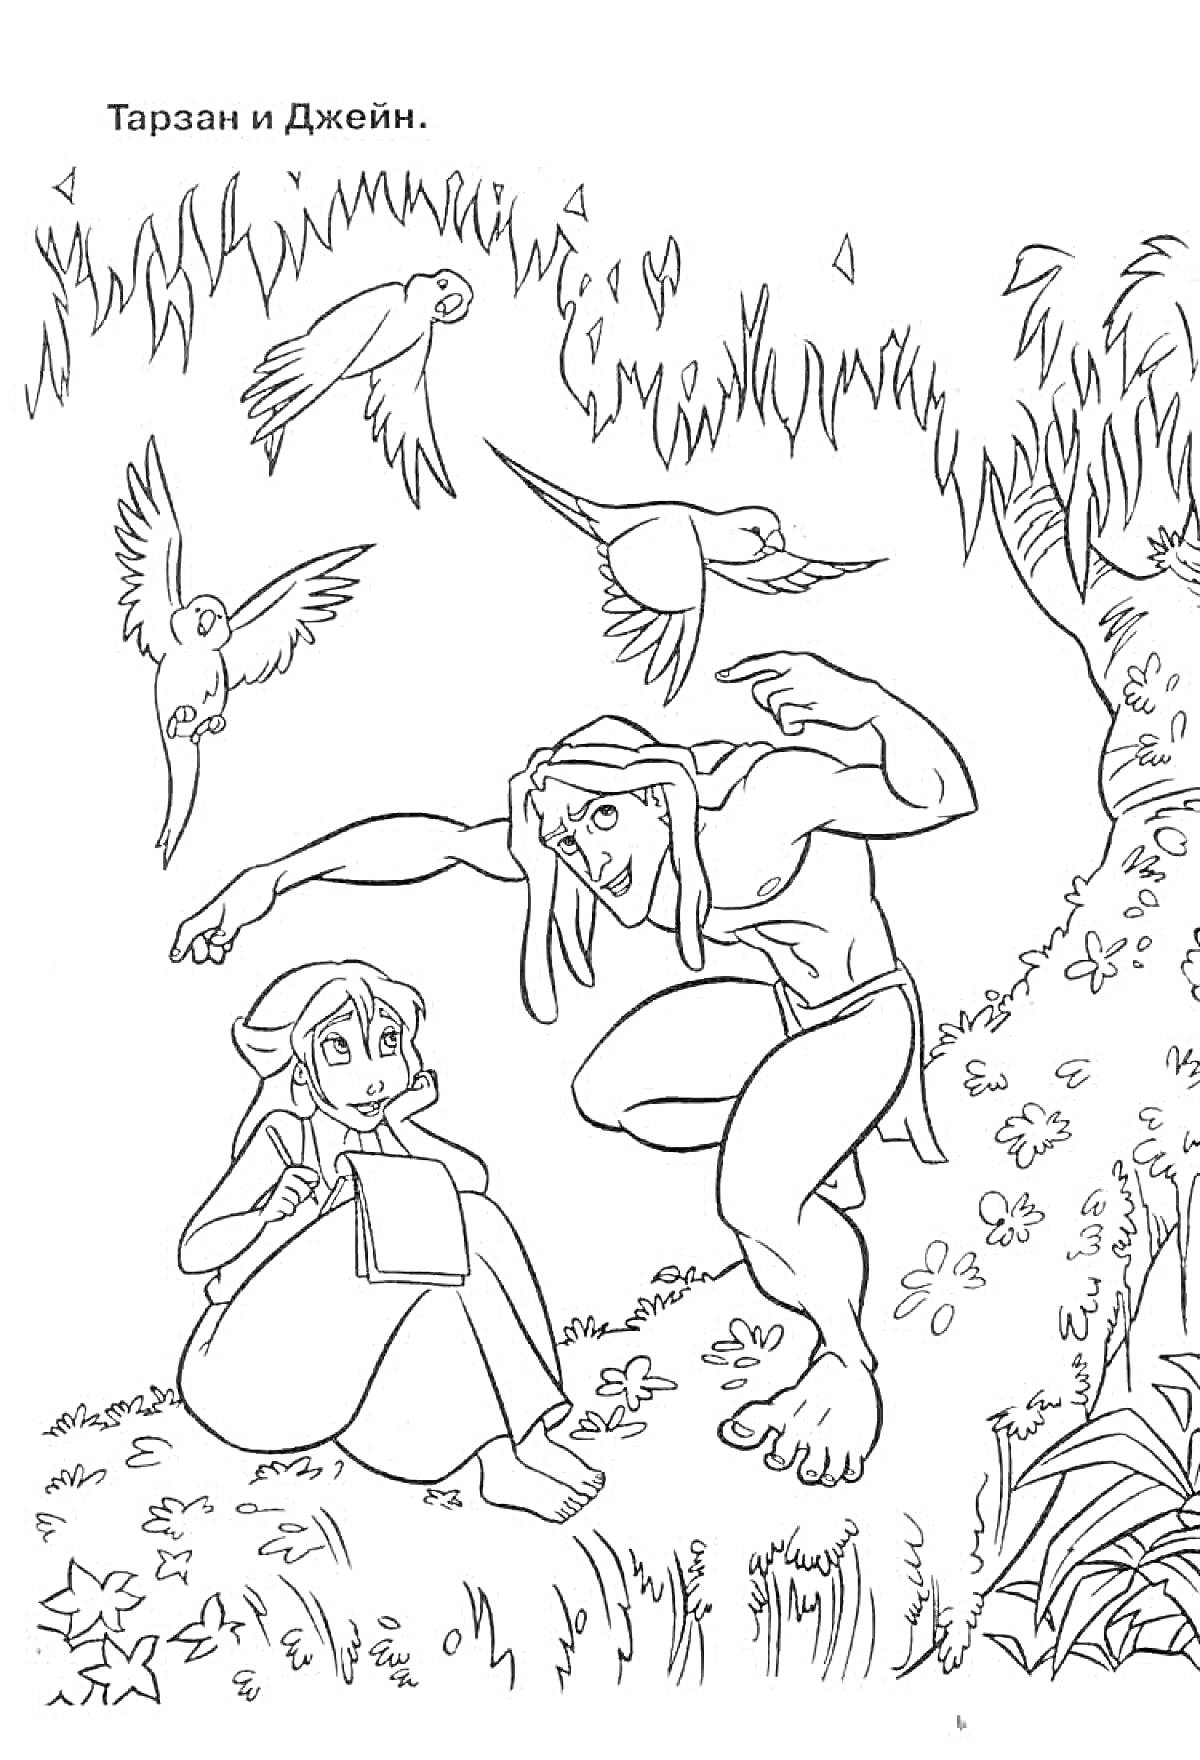 Тарзан прячется за деревом, находясь в джунглях с Джейн, которая сидит на земле и рисует, на заднем плане три птицы